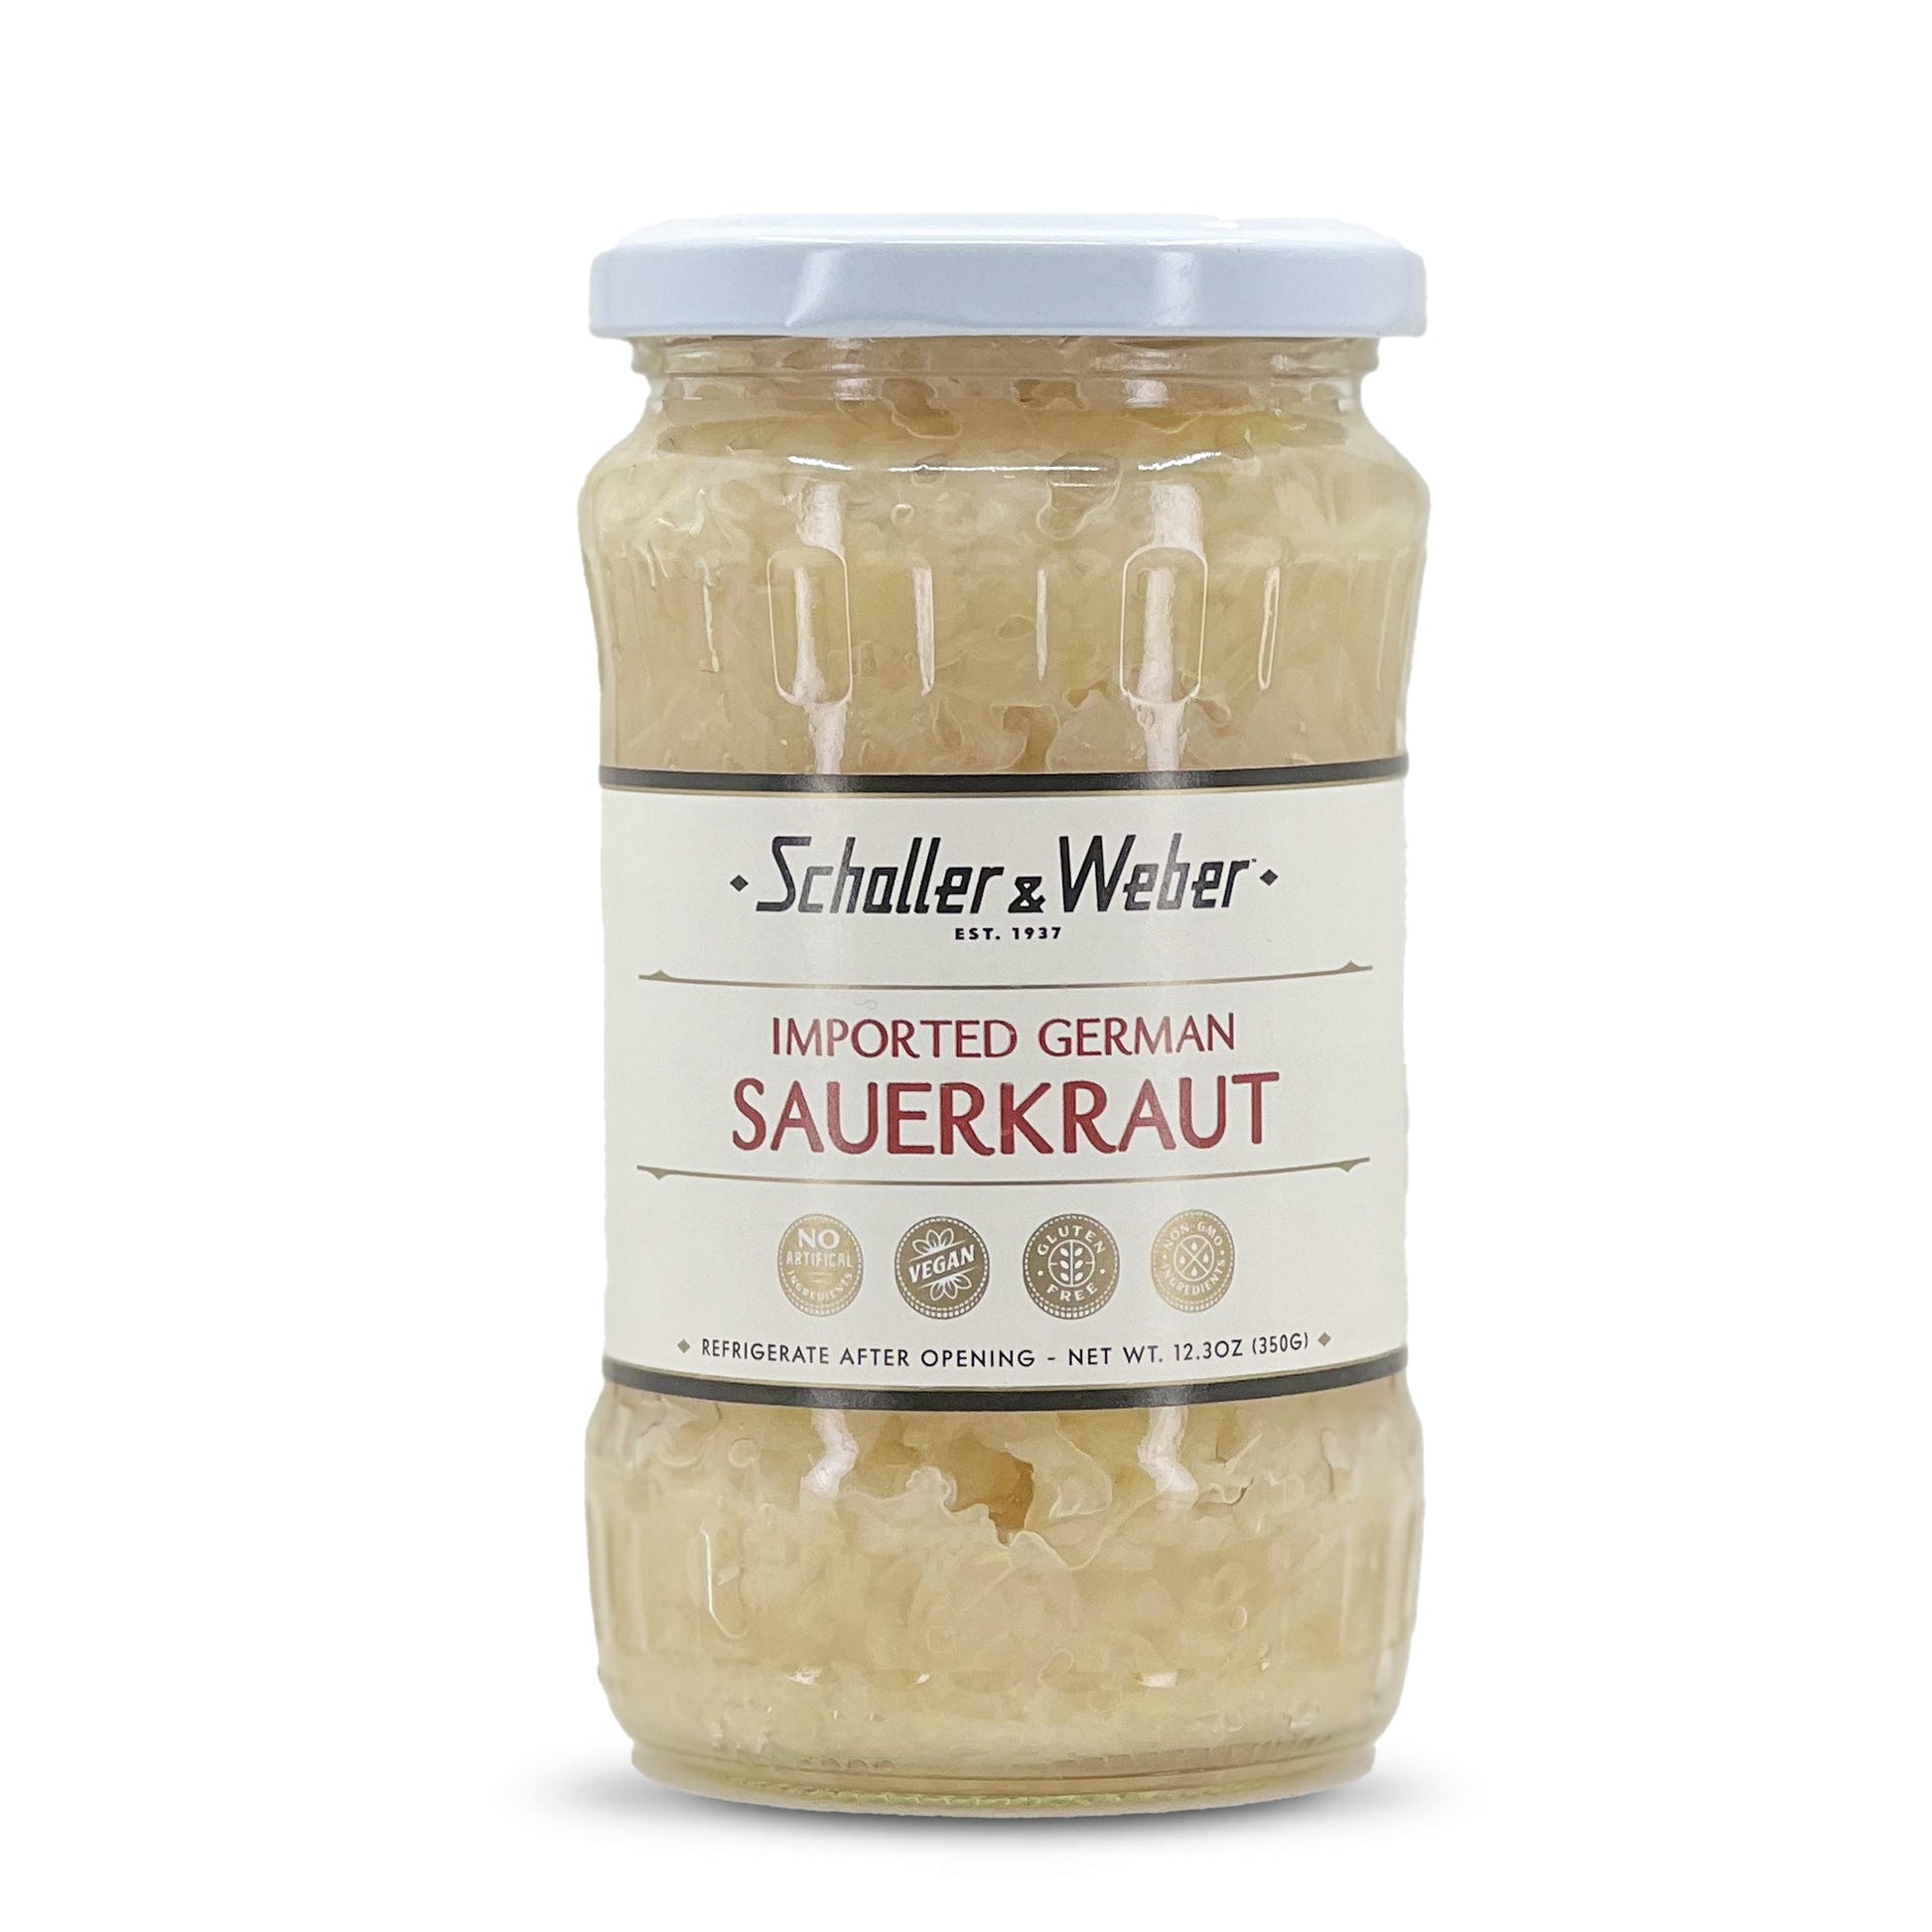 Sauerkraut - Schaller & Weber